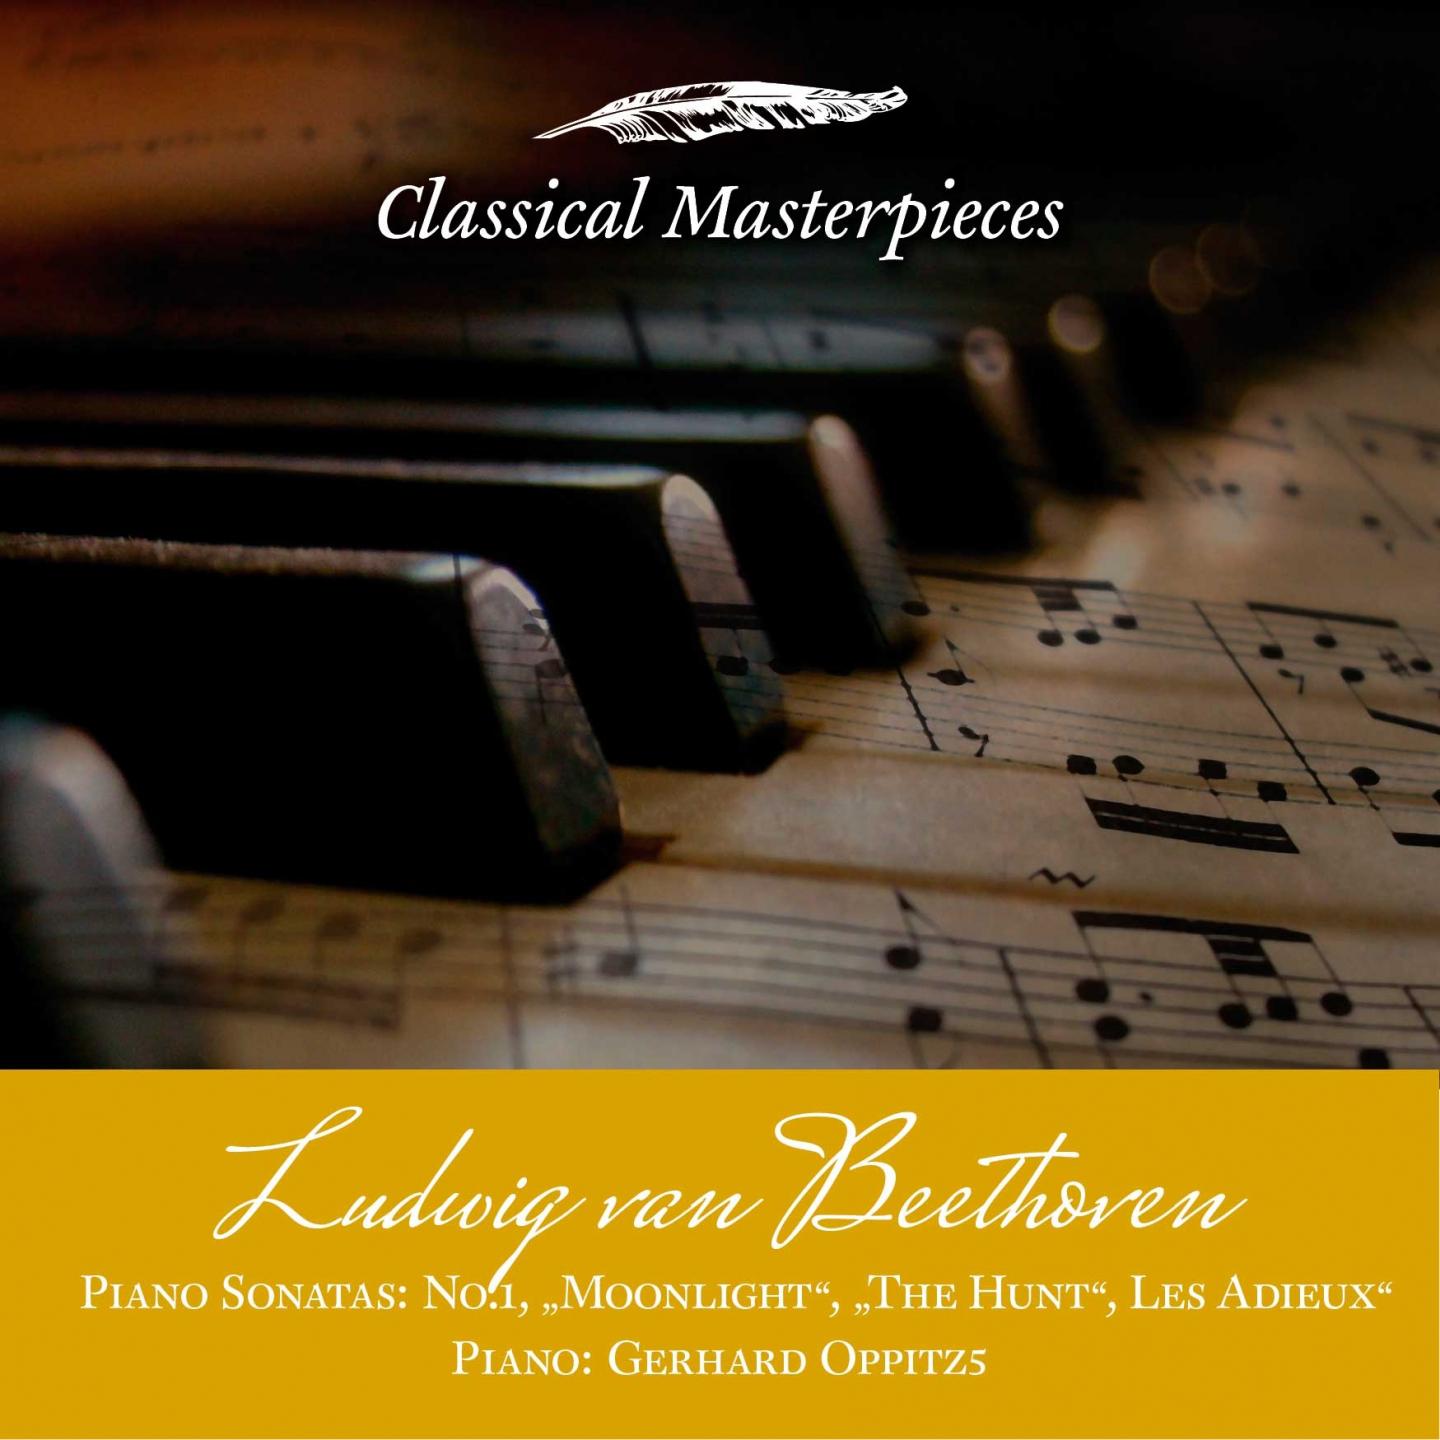 Piano Sonata No. 18 in E-Flat Major, op. 31 No. 3 "The Hunt":III. Menuetto - Trio. Moderato e grazioso